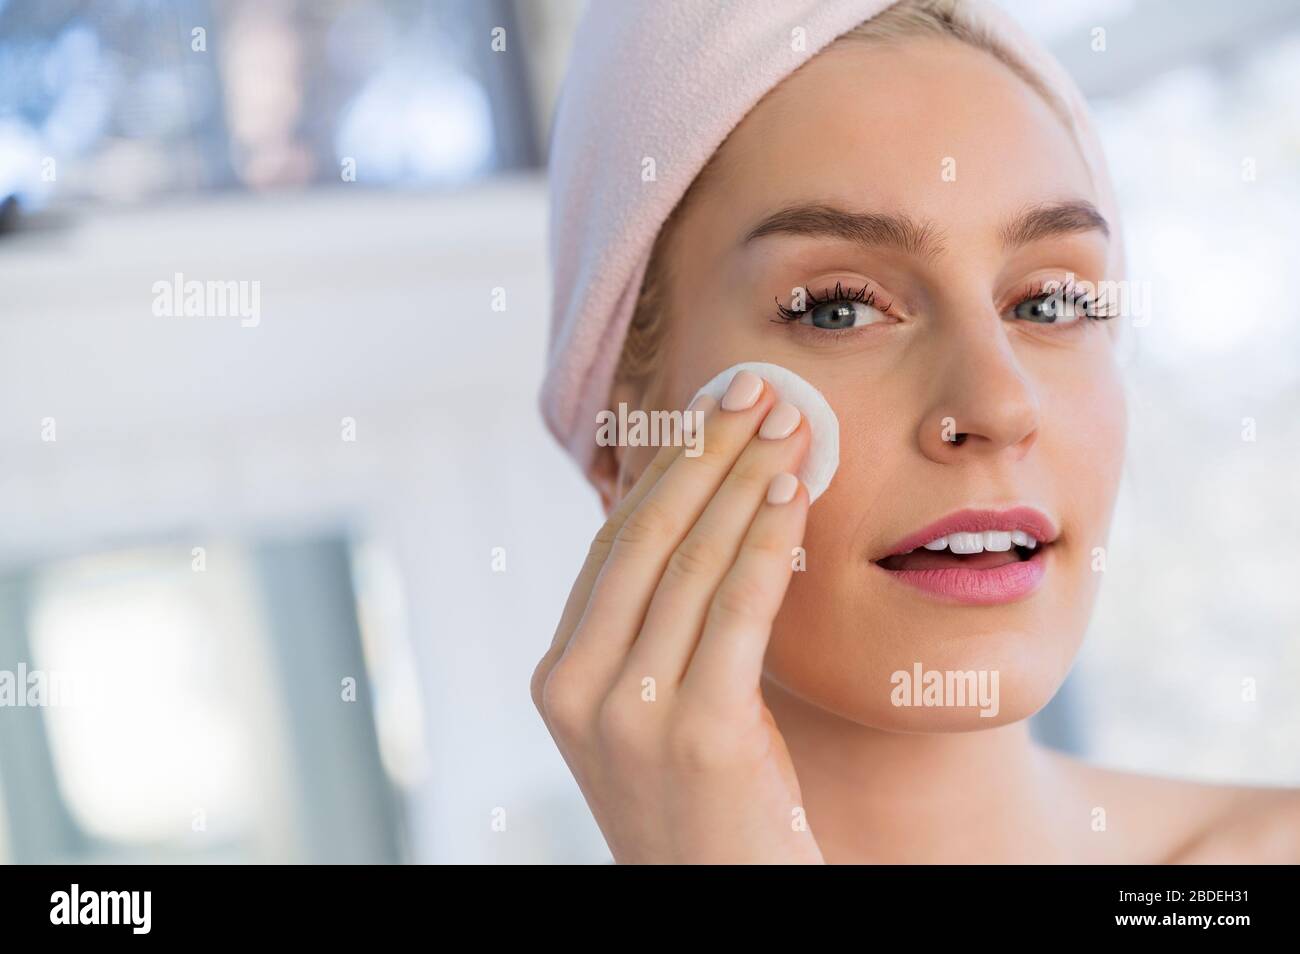 Femme utilisant un tampon de nettoyage pour laver le visage Banque D'Images